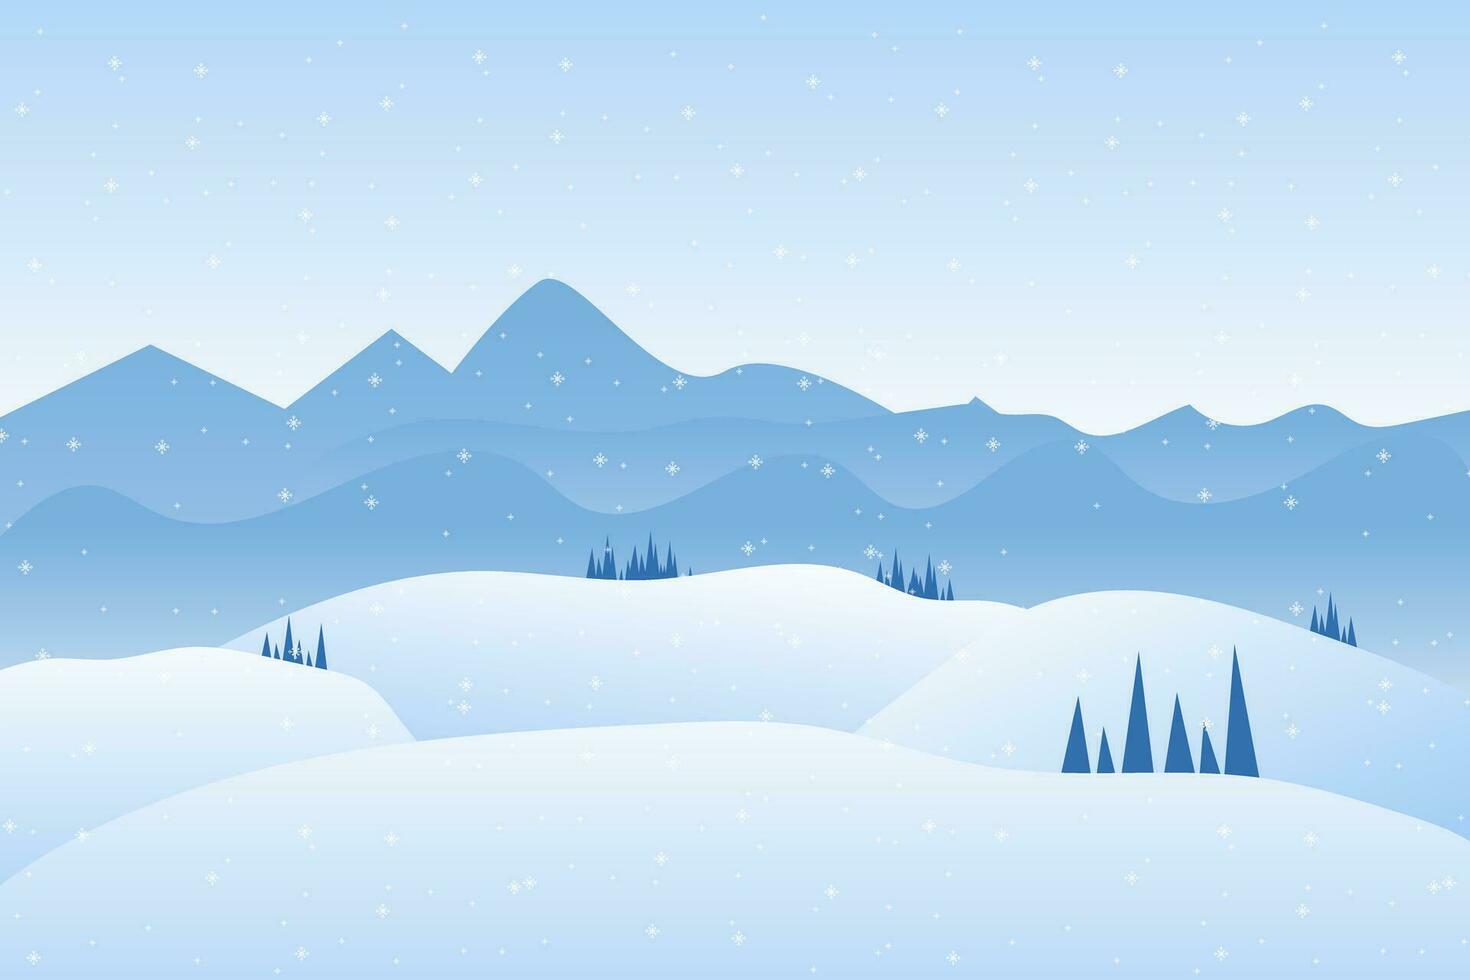 vektor illustration av vinter- snöig bergen landskap med kullar och tallar, vinter- träd och chistmas träd med snö på isolerat blå bakgrund begrepp vektor